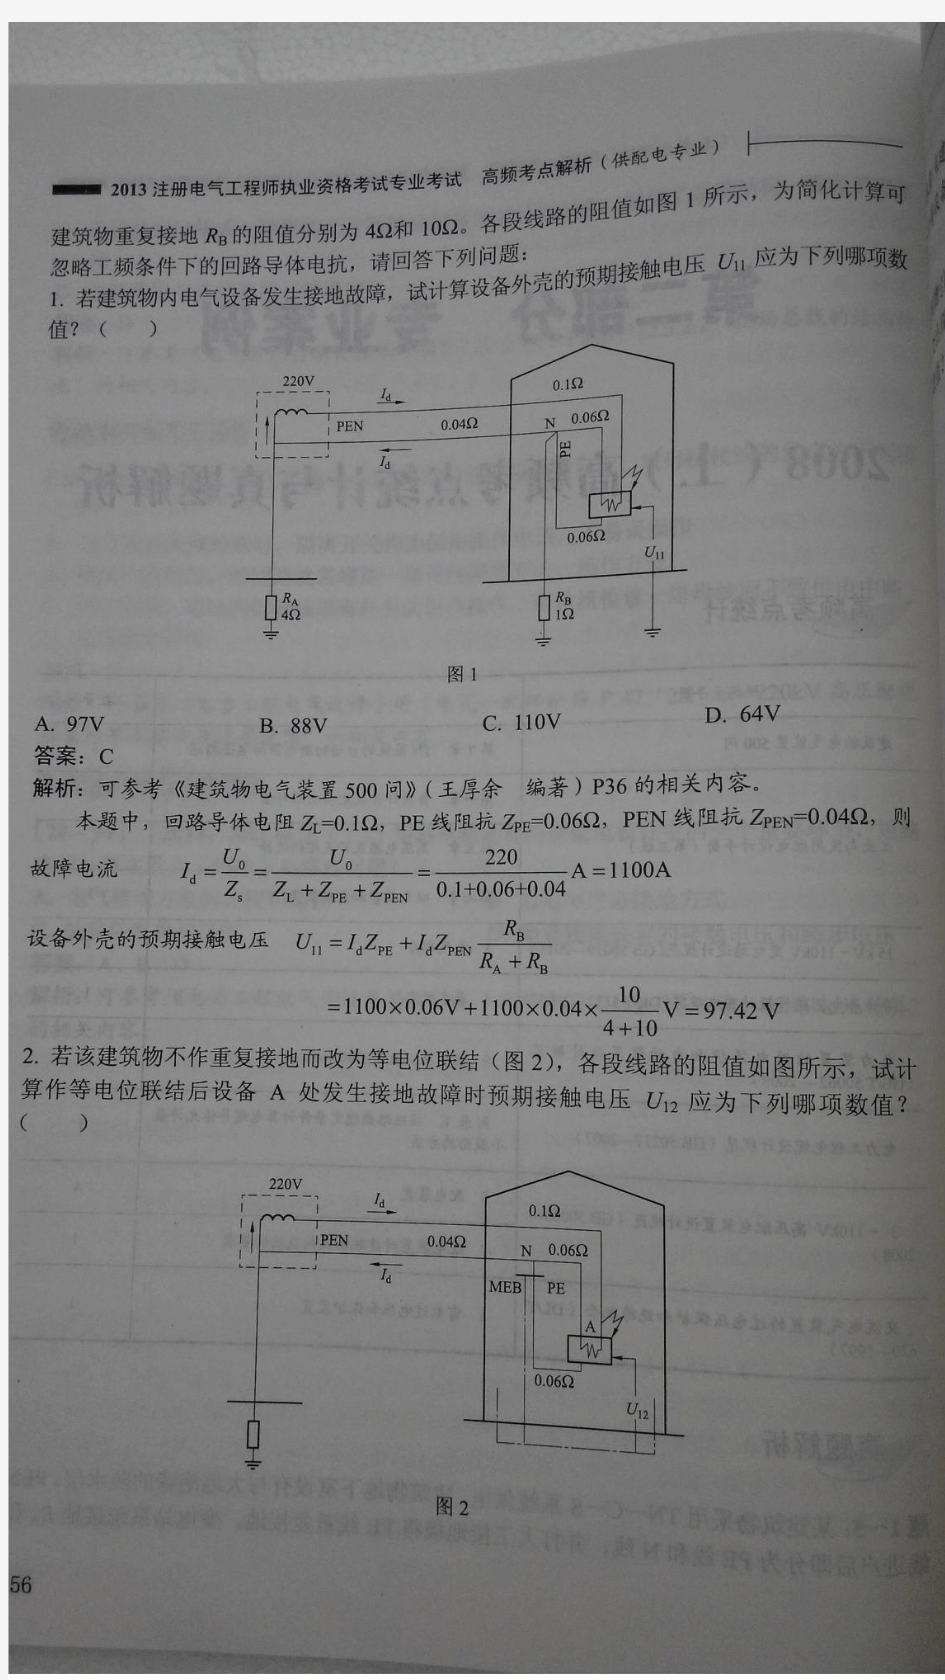 2008-2009年注册电气工程师(供配电)专业案例题(上下午卷).pdf